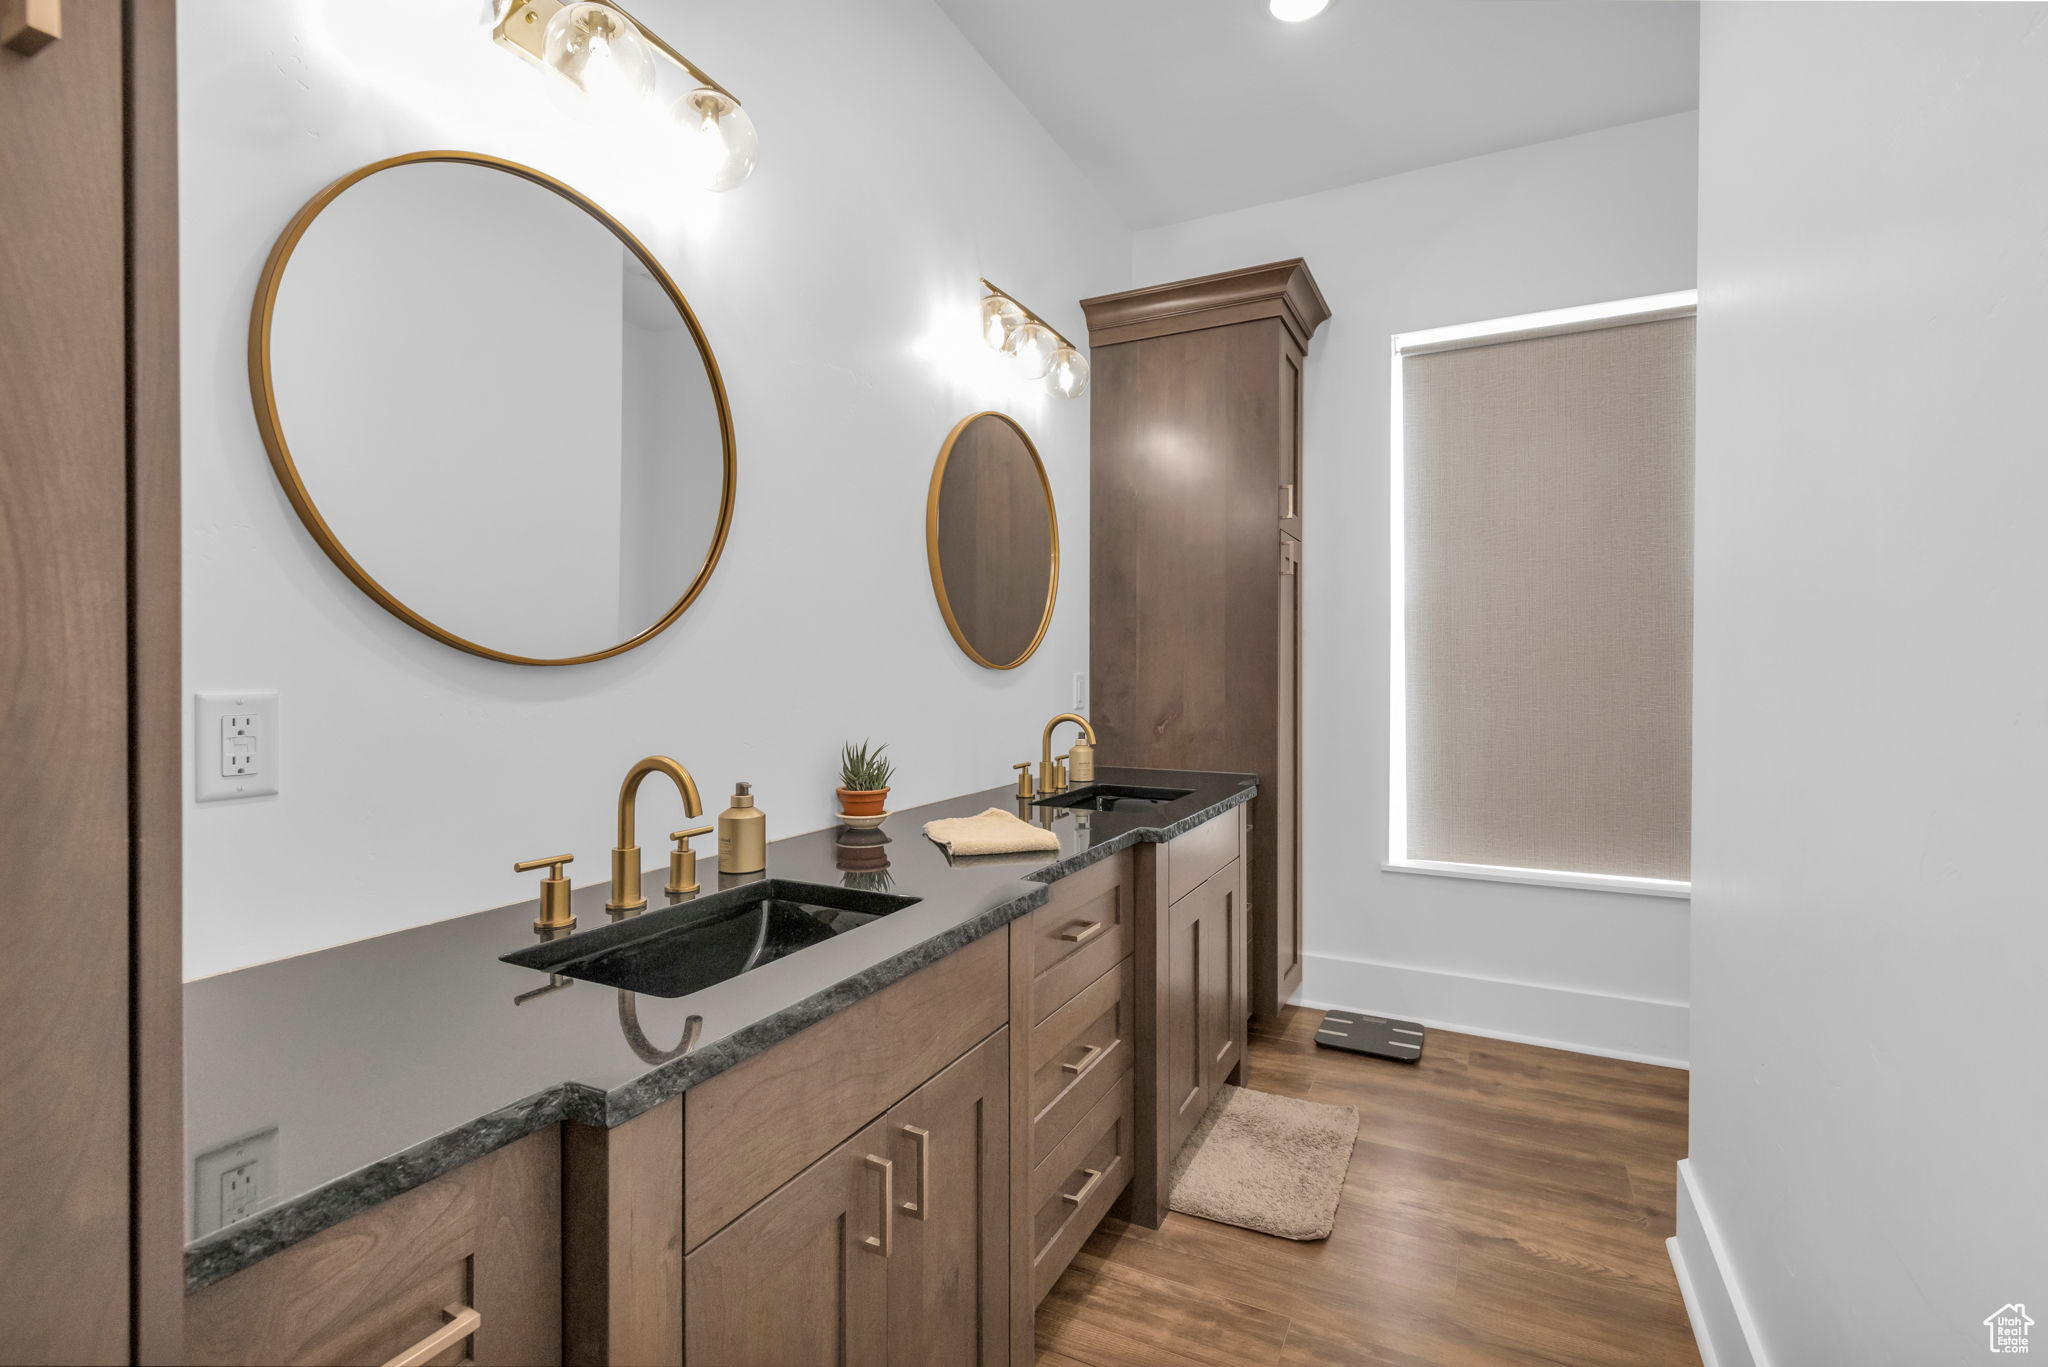 Bathroom with double vanity and hardwood / wood-style flooring